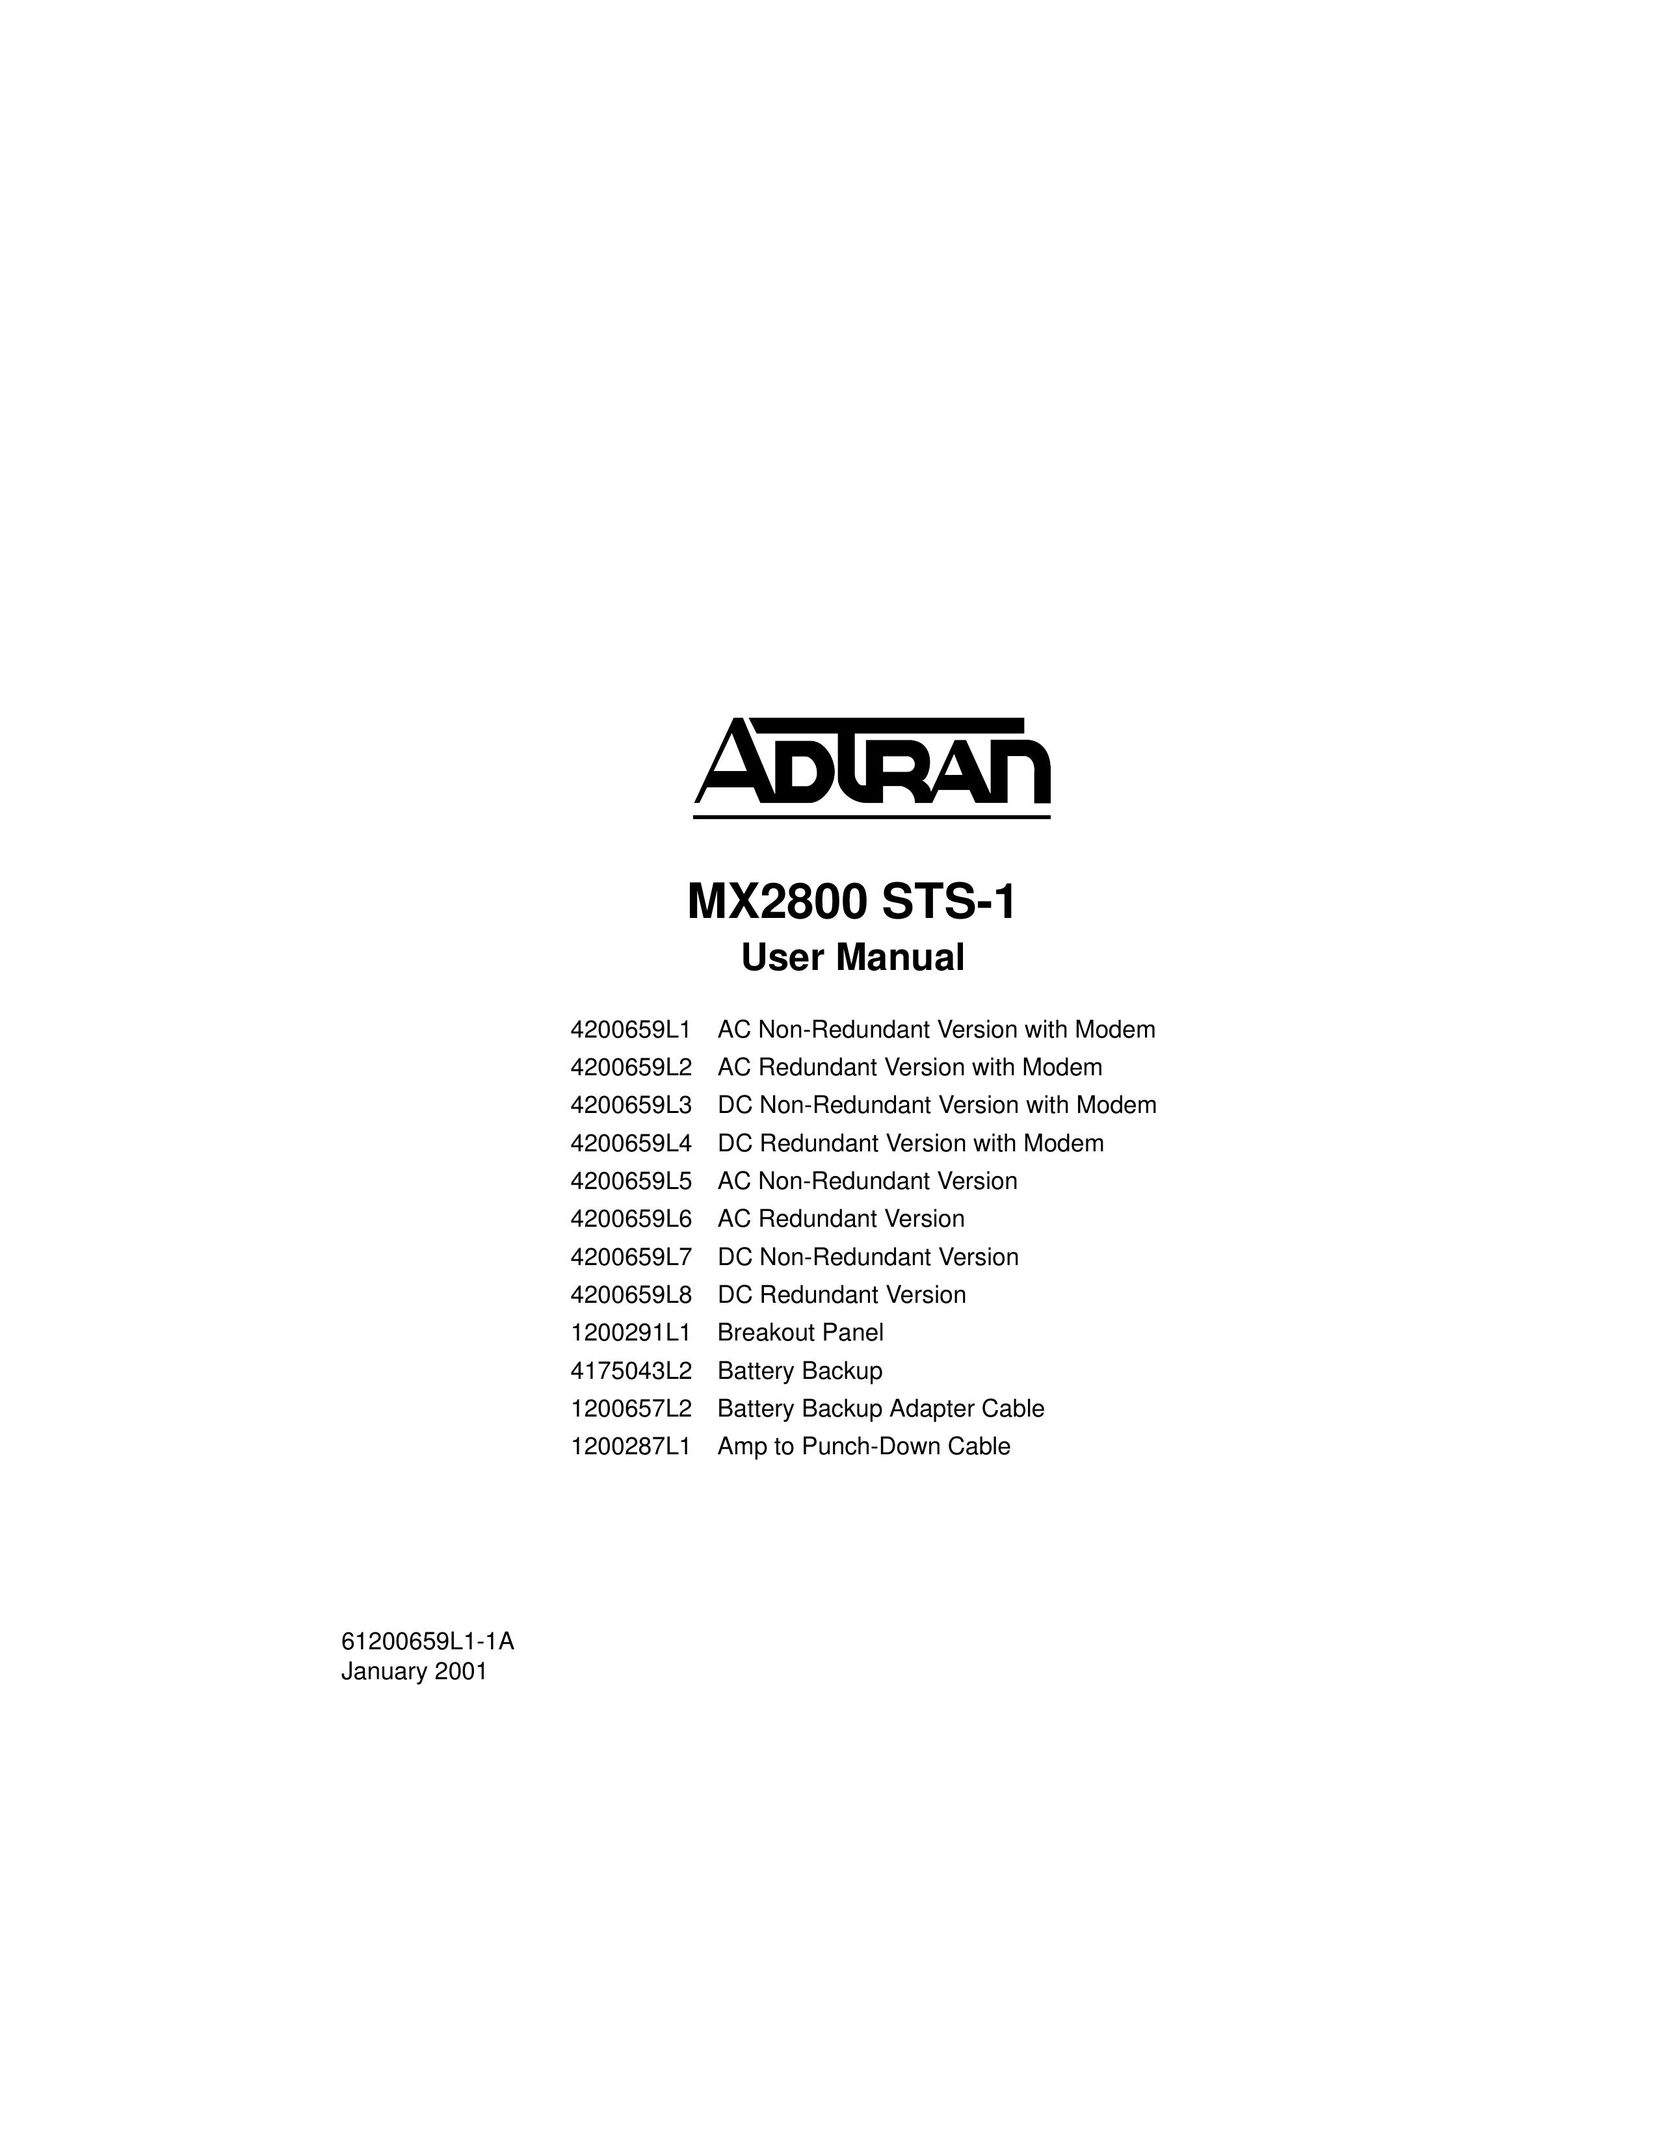 ADTRAN 4200659L7 Switch User Manual